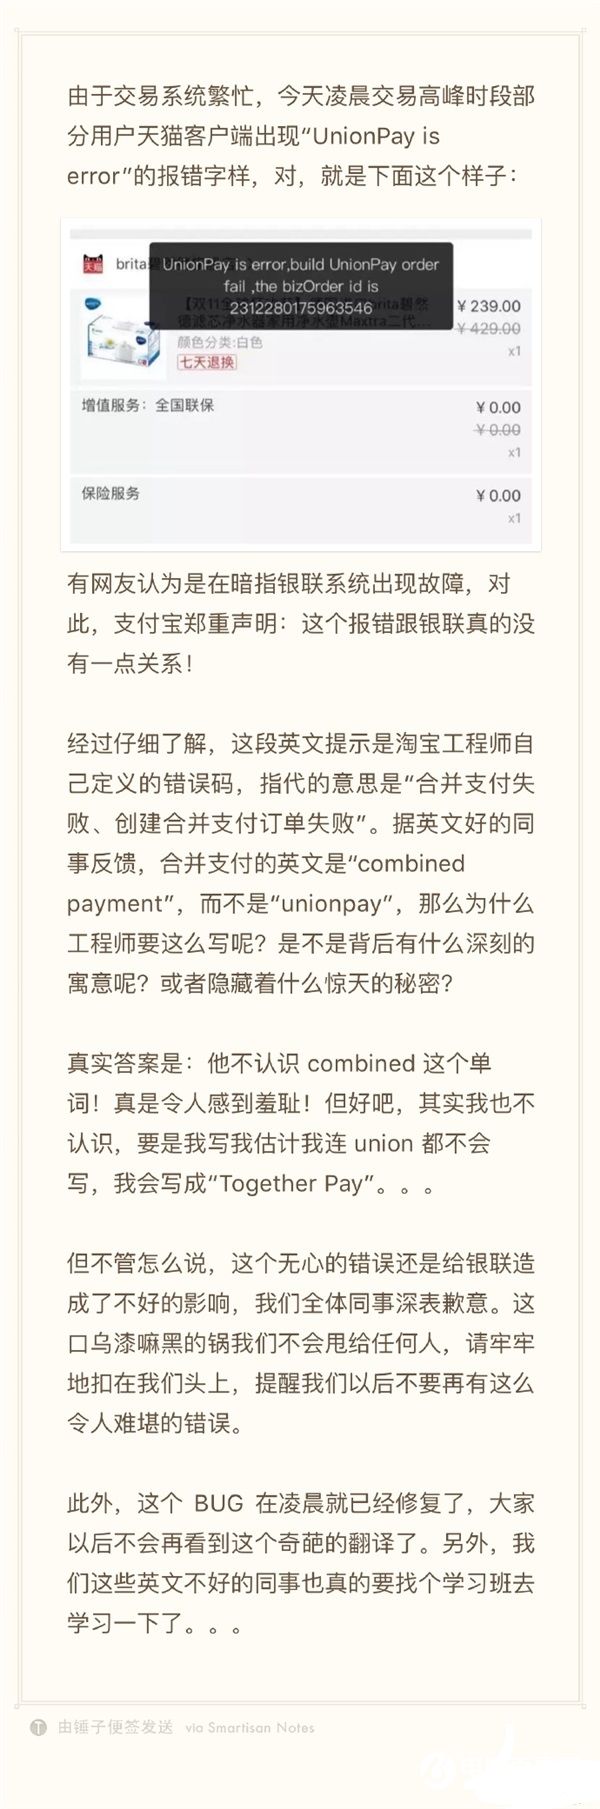 天猫“UnionPay is error”怎么回事 中国银联正式回应